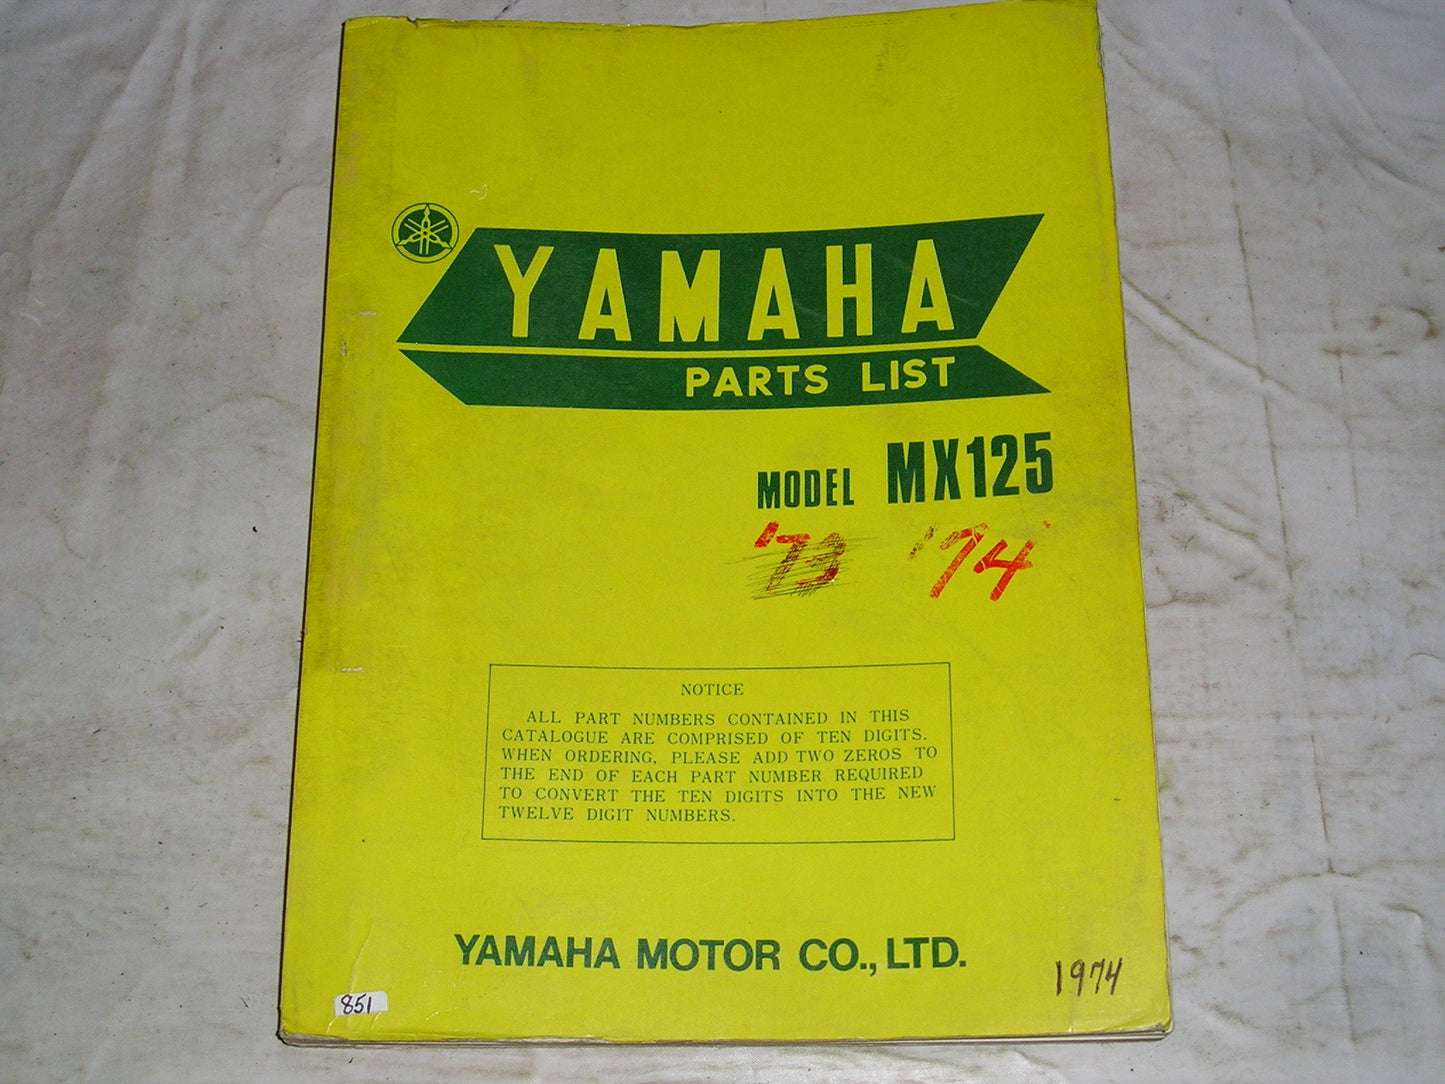 YAMAHA MX125 A  MX125 B  MX175 B  1974 1975  Parts List / Catalogue  455-28198-82  LIT-10014-55-02#851